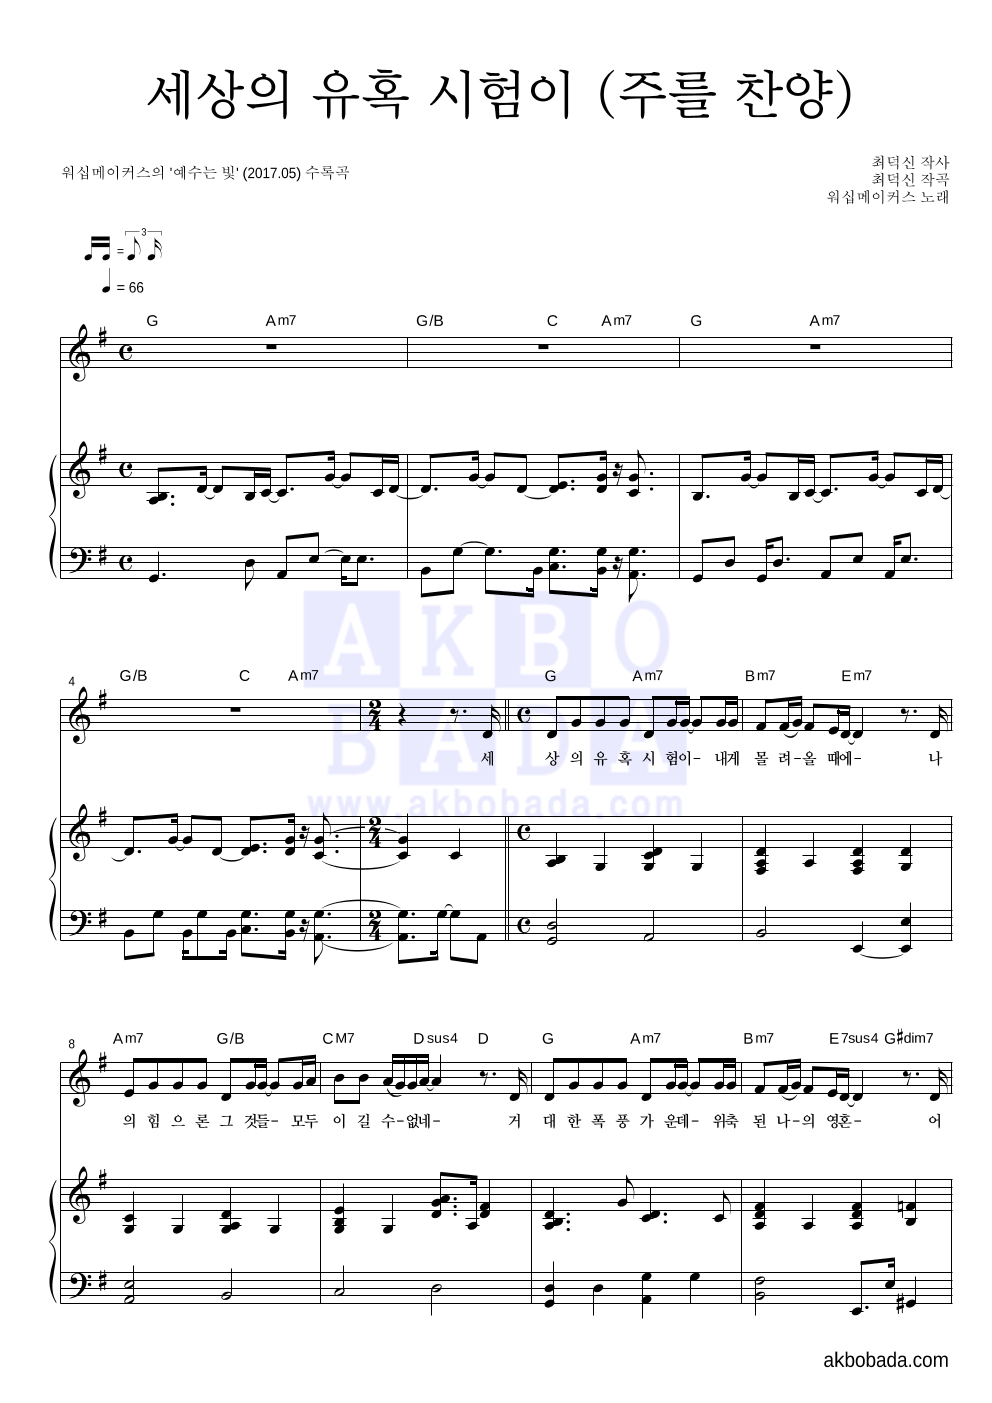 워십메이커스 - 세상의 유혹 시험이 (주를 찬양) 피아노 3단 악보 